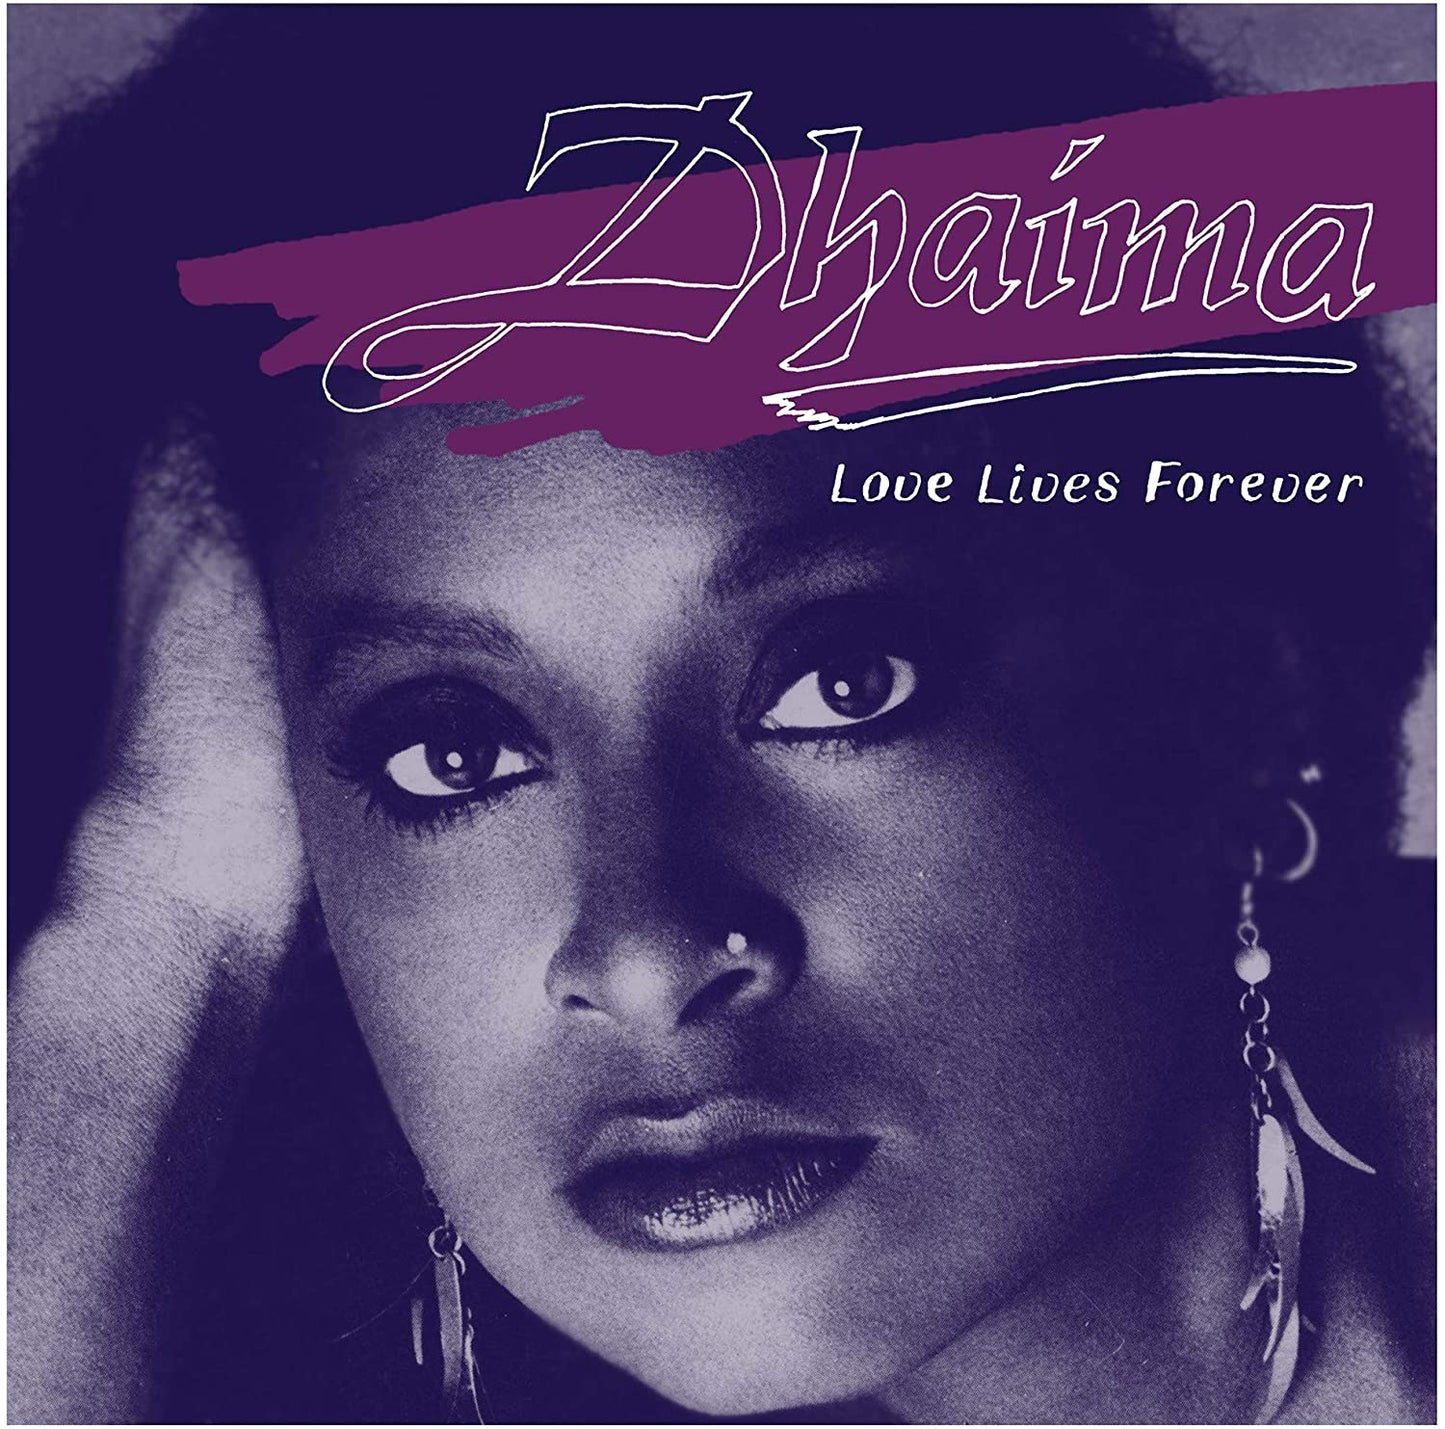 Dhaima - Love Lives Forever